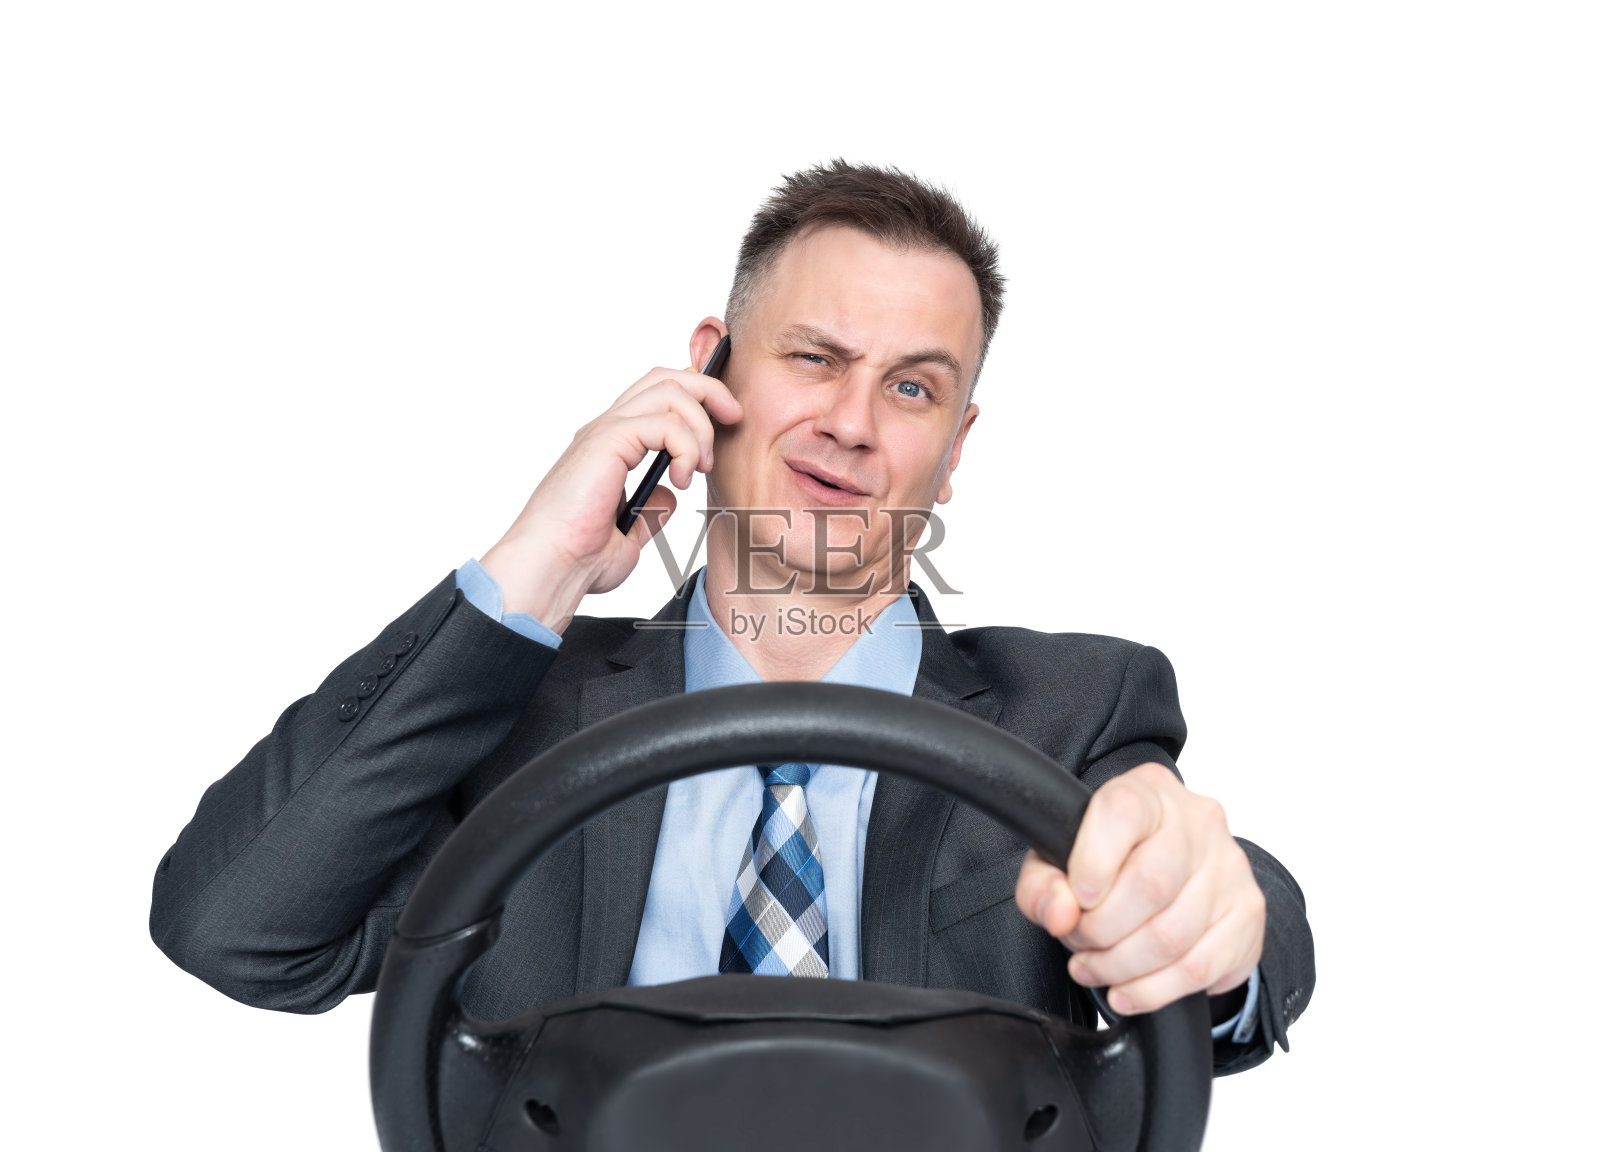 一名身穿深色西装、打着领带的男子正在用智能手机讲话，手里拿着汽车方向盘，在白色背景中孤立无间。安全驾驶的概念照片摄影图片